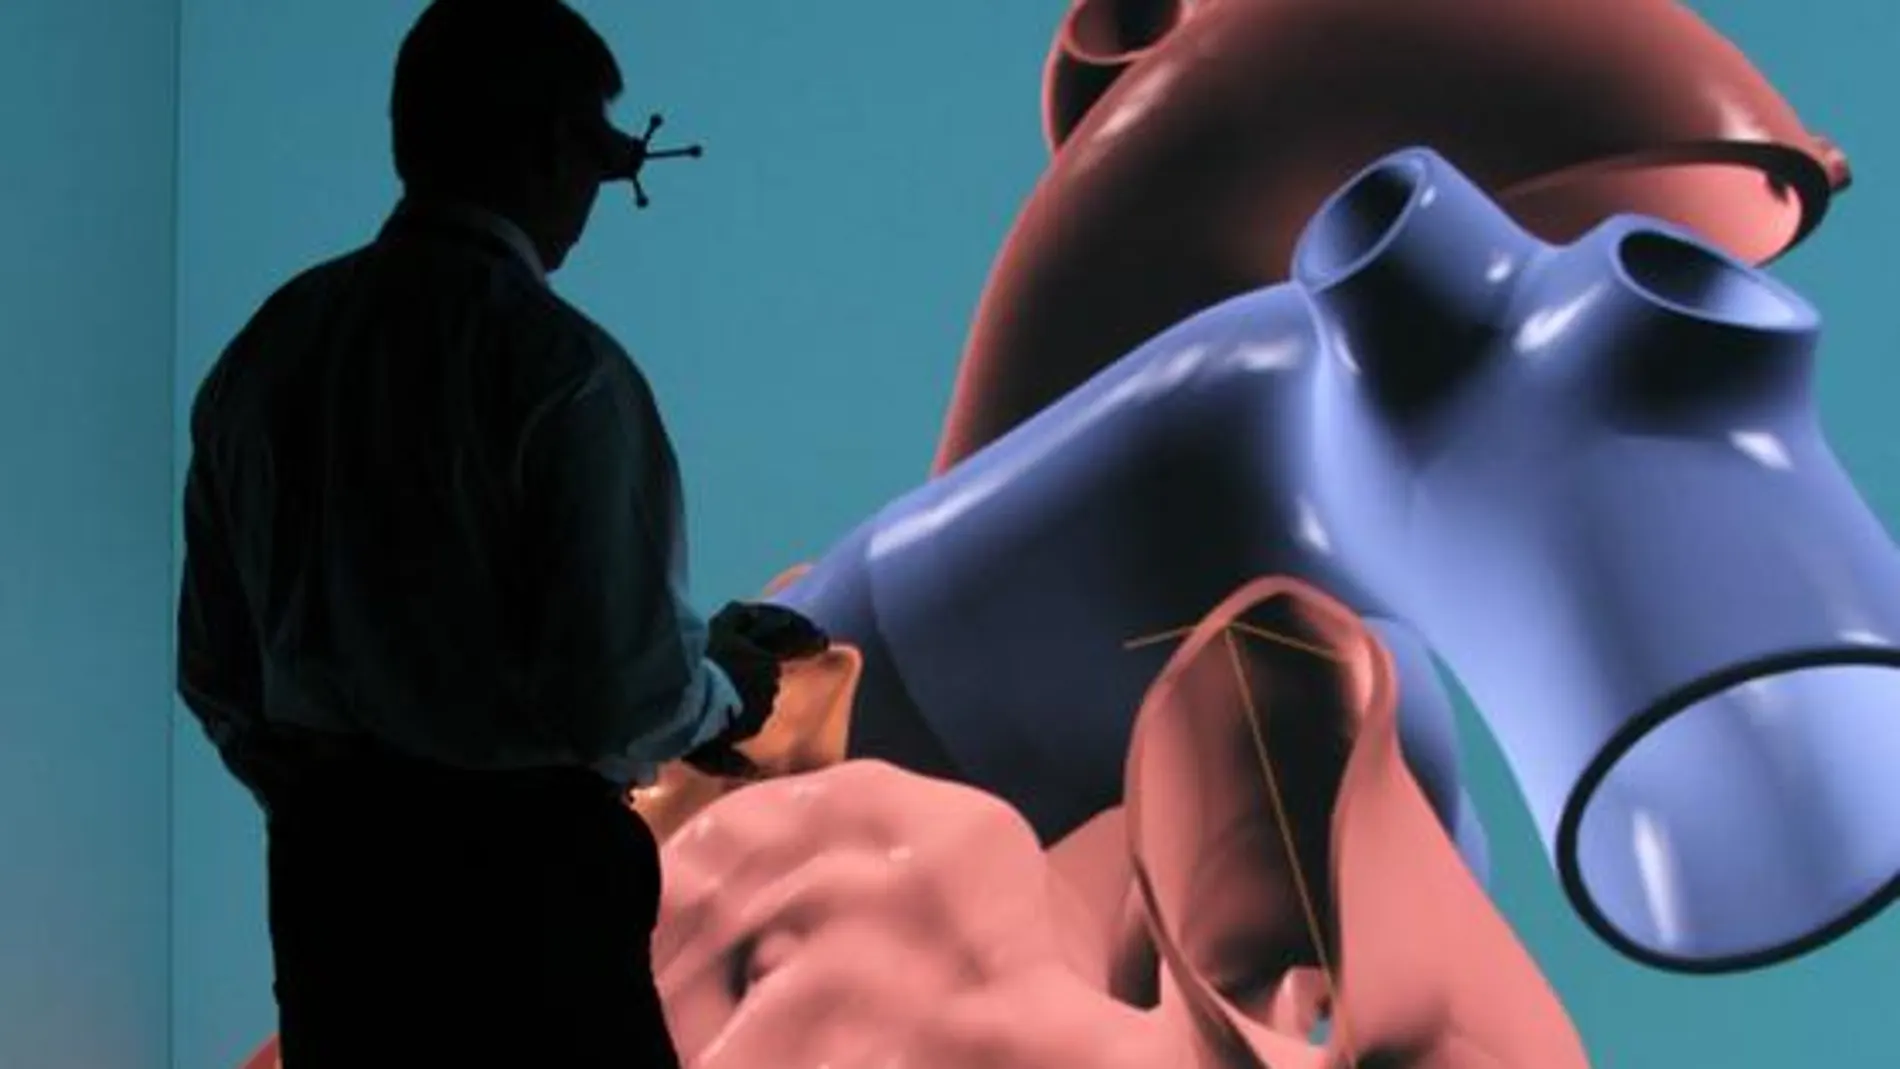 Dassault Systèmes ha desarrollado un modelo virtual en 3D de un corazón humano completo